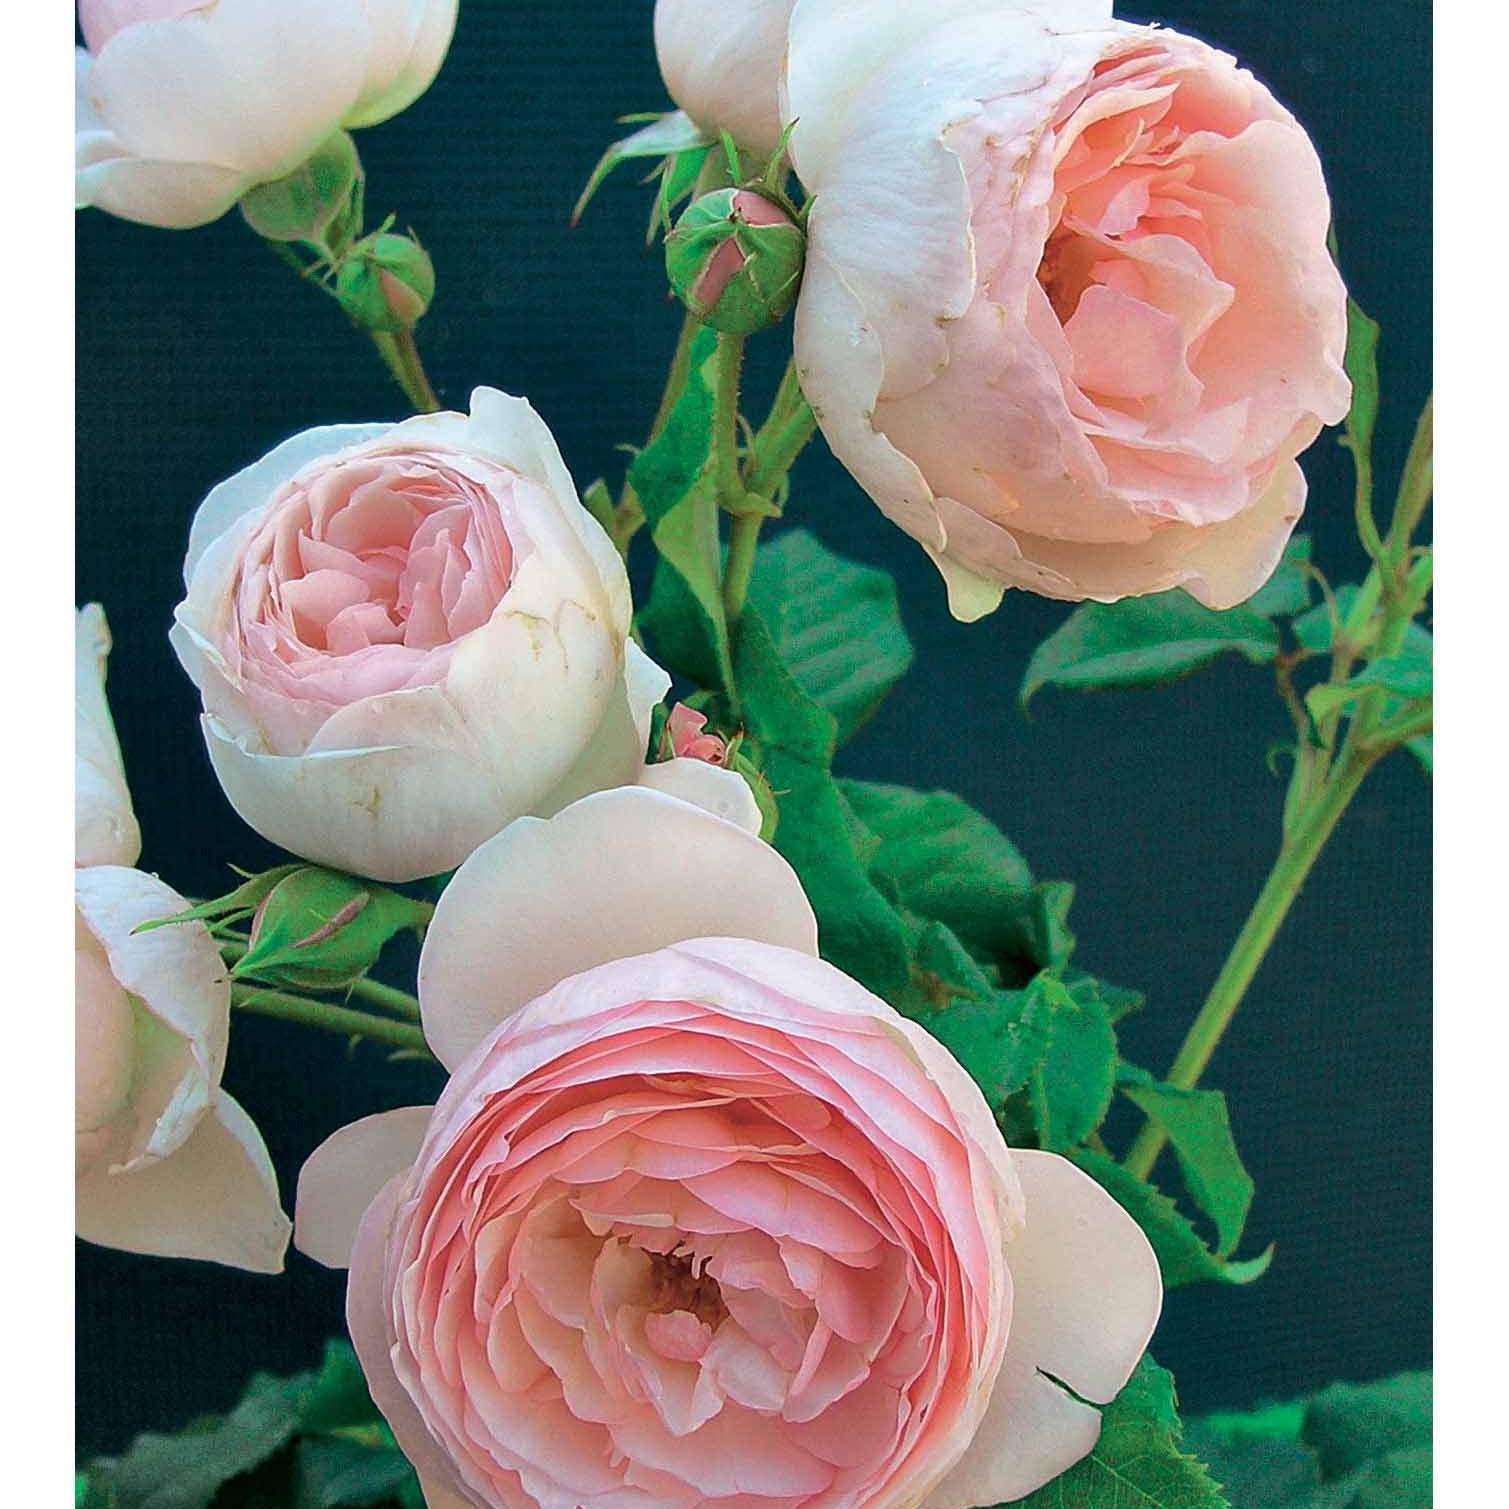 Collectie Engelse rozen (Fish Ausgreen,Charlie,Her's Ausgreen) (x3) - Rosa(fish ausgreen,charlie ausgreen,her's ausgreen